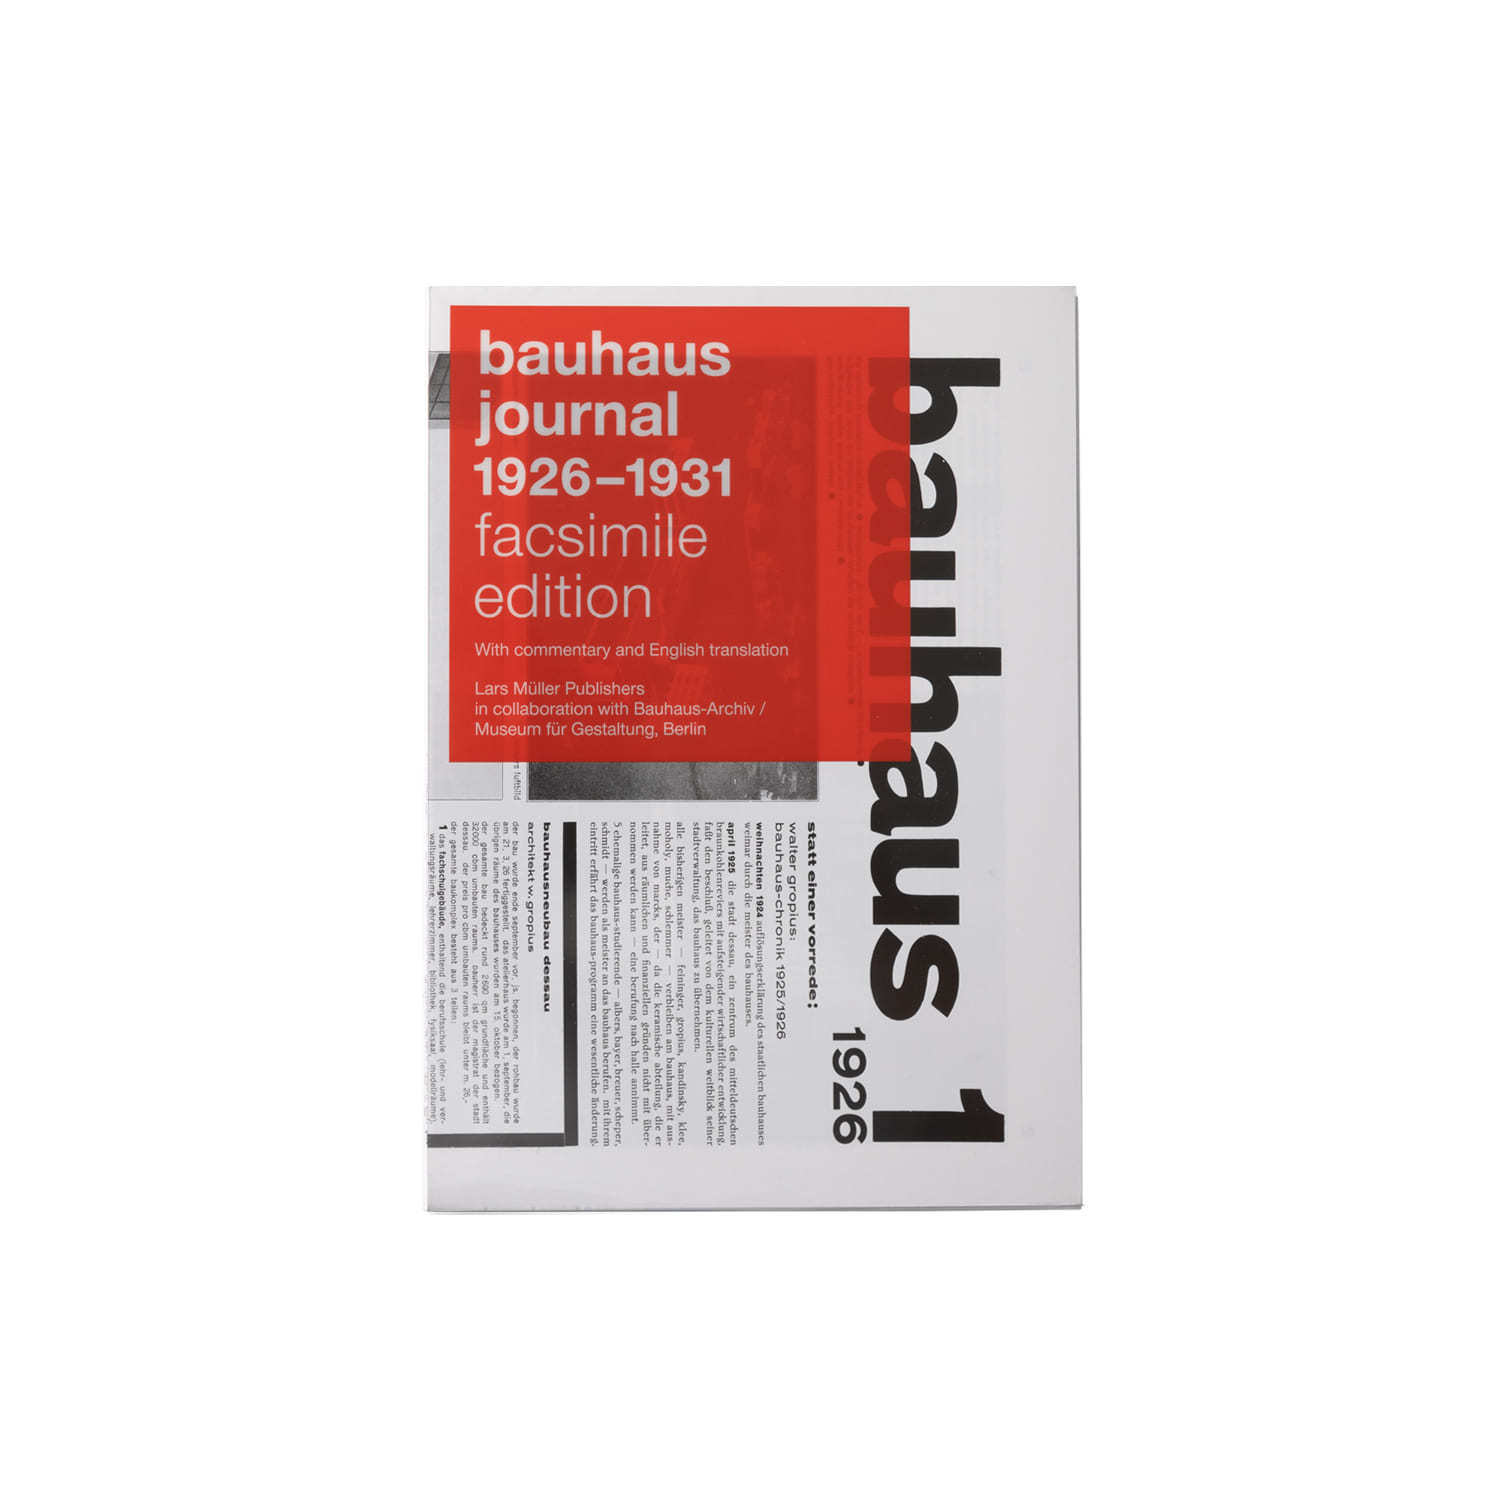 BAUHAUS JOURNAL 1926-1931 (LAS MULLER PUBLISHERS)